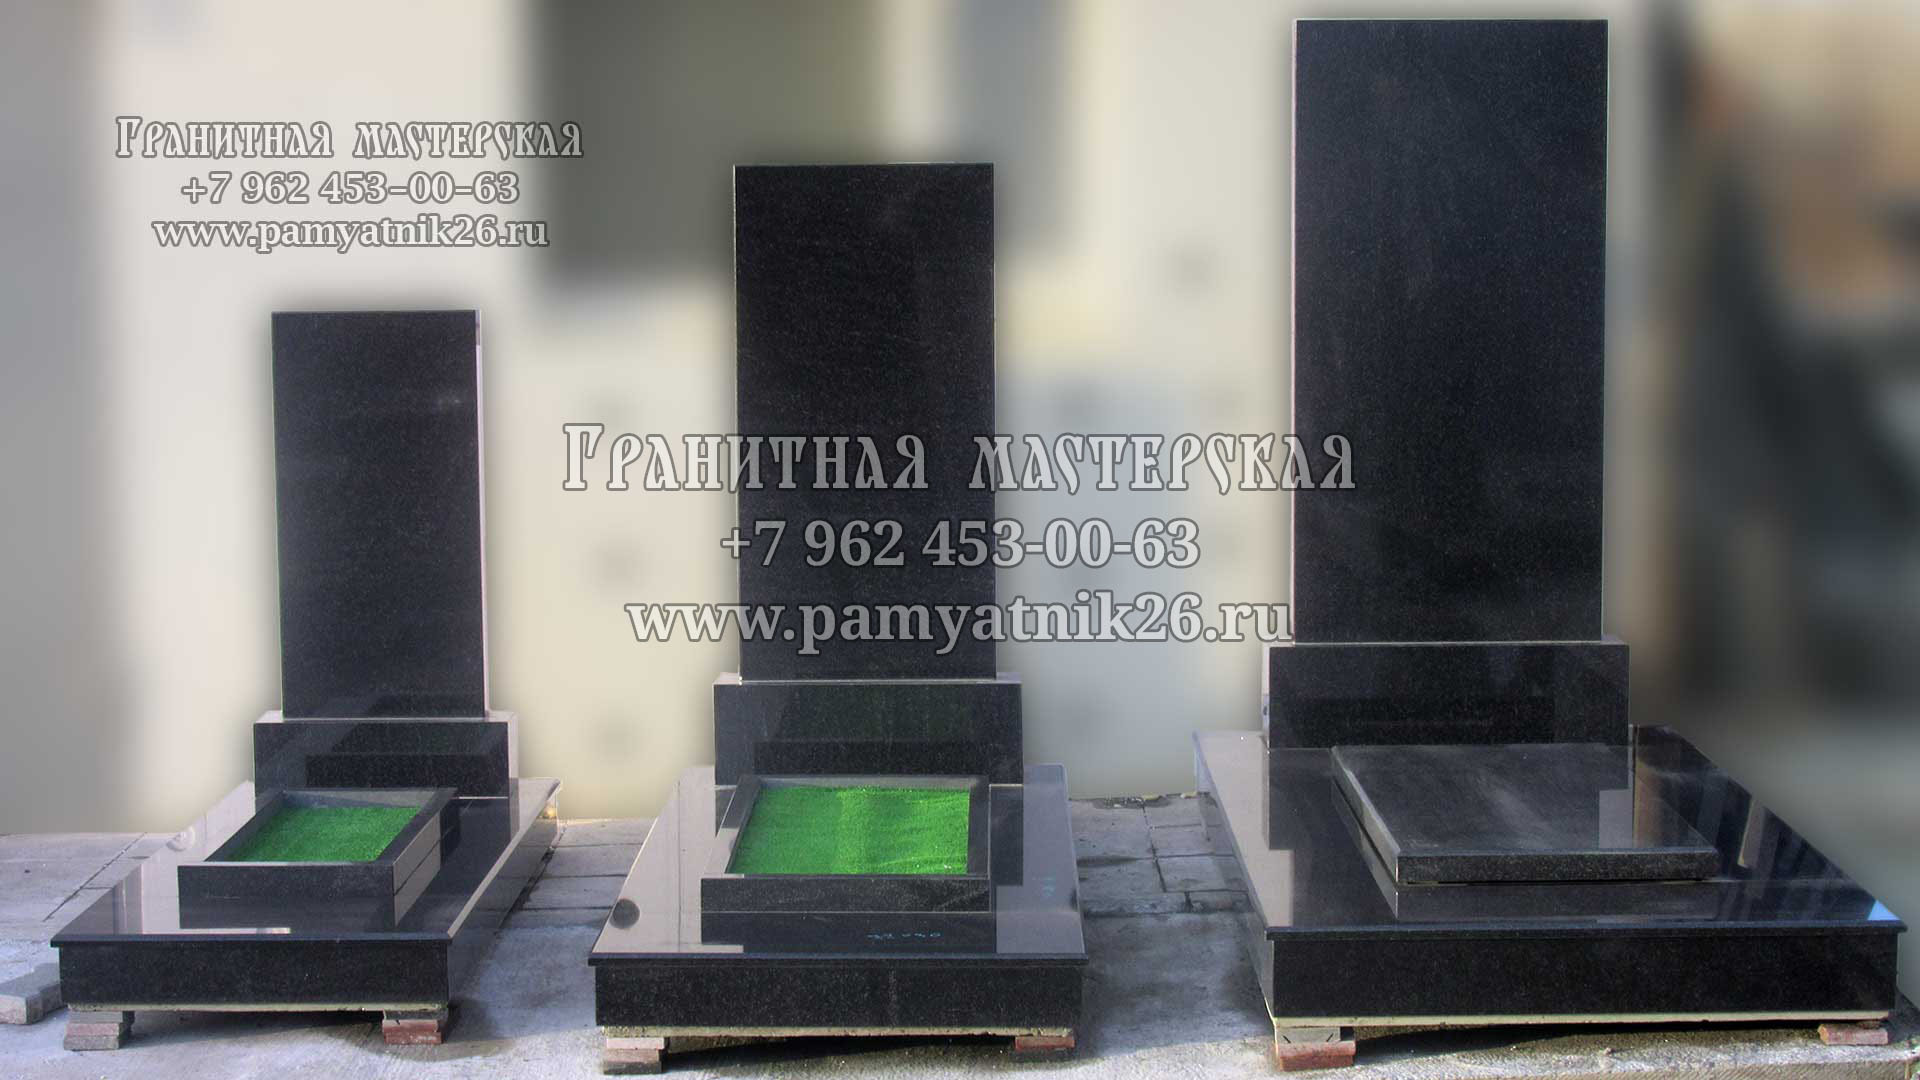 Памятники трех размеров: 80x40, 100x50 и 120x60 см